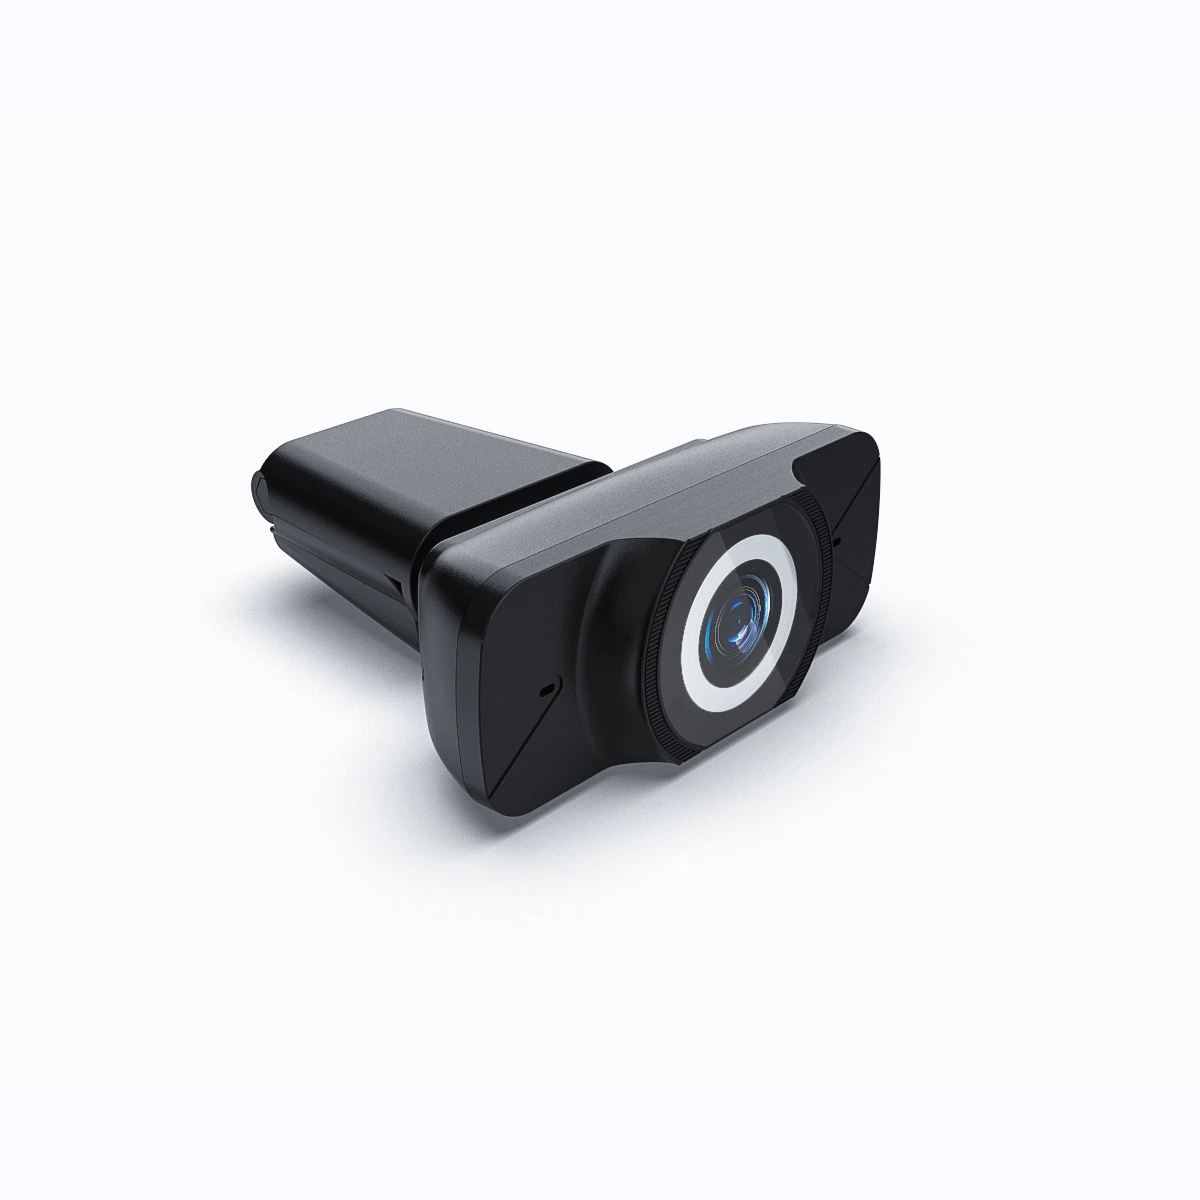 Venda por grosso Fullhd 1080P 30fps webcam USB portátil objectiva de ângulo largo conferência de vídeo câmara de PC